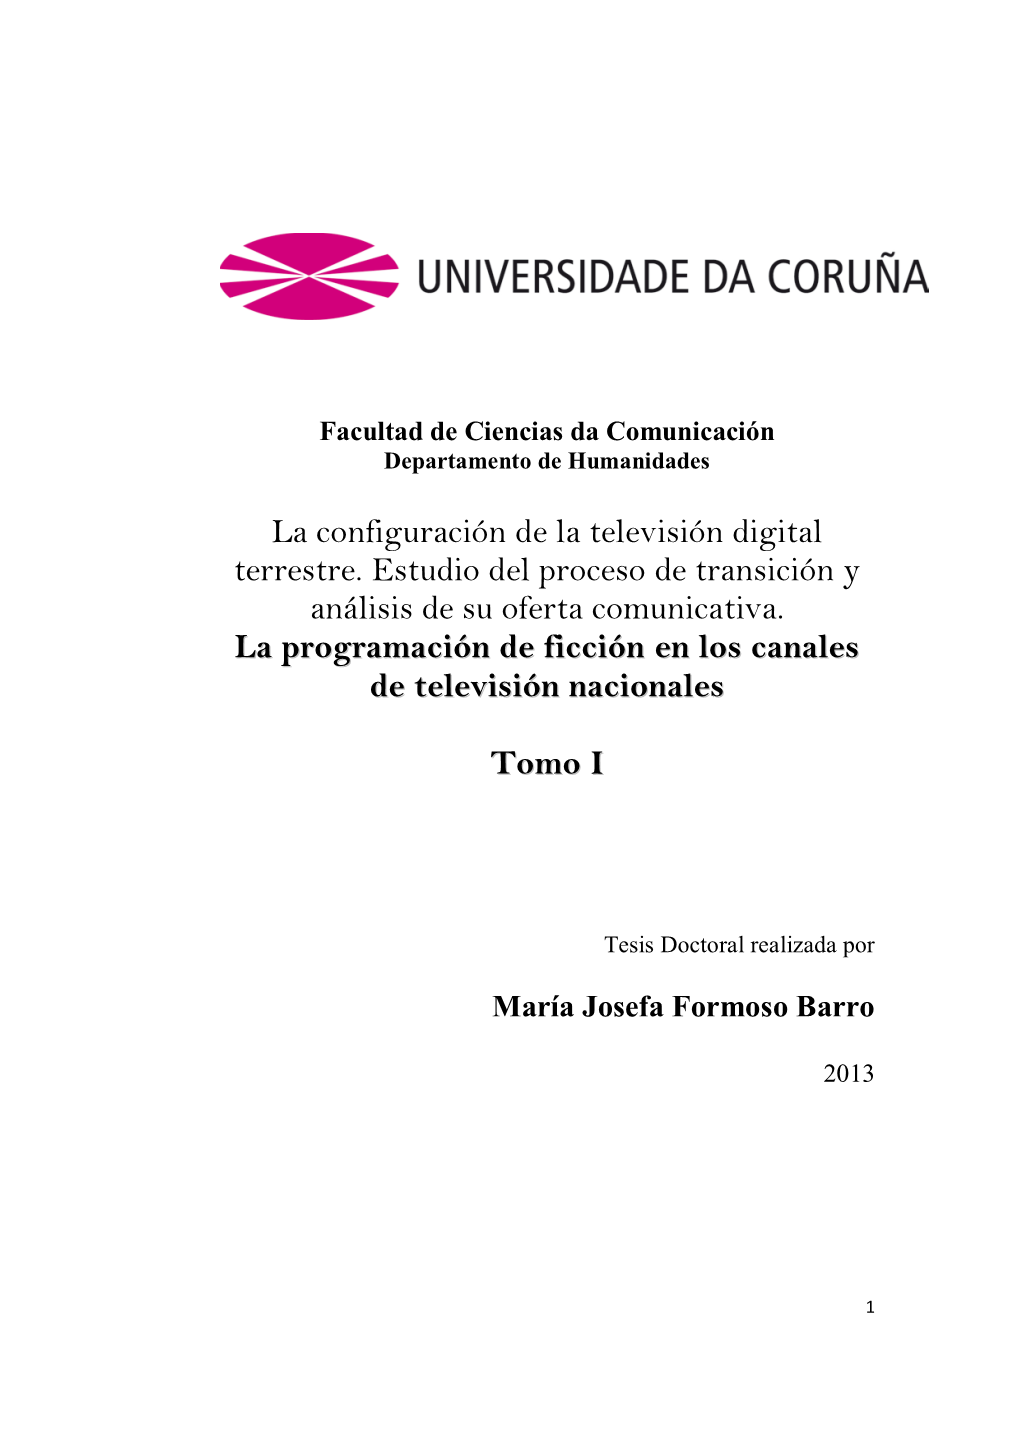 La Configuración De La Televisión Digital Terrestre. Estudio Del Proceso De Transición Y Análisis De Su Oferta Comunicativa